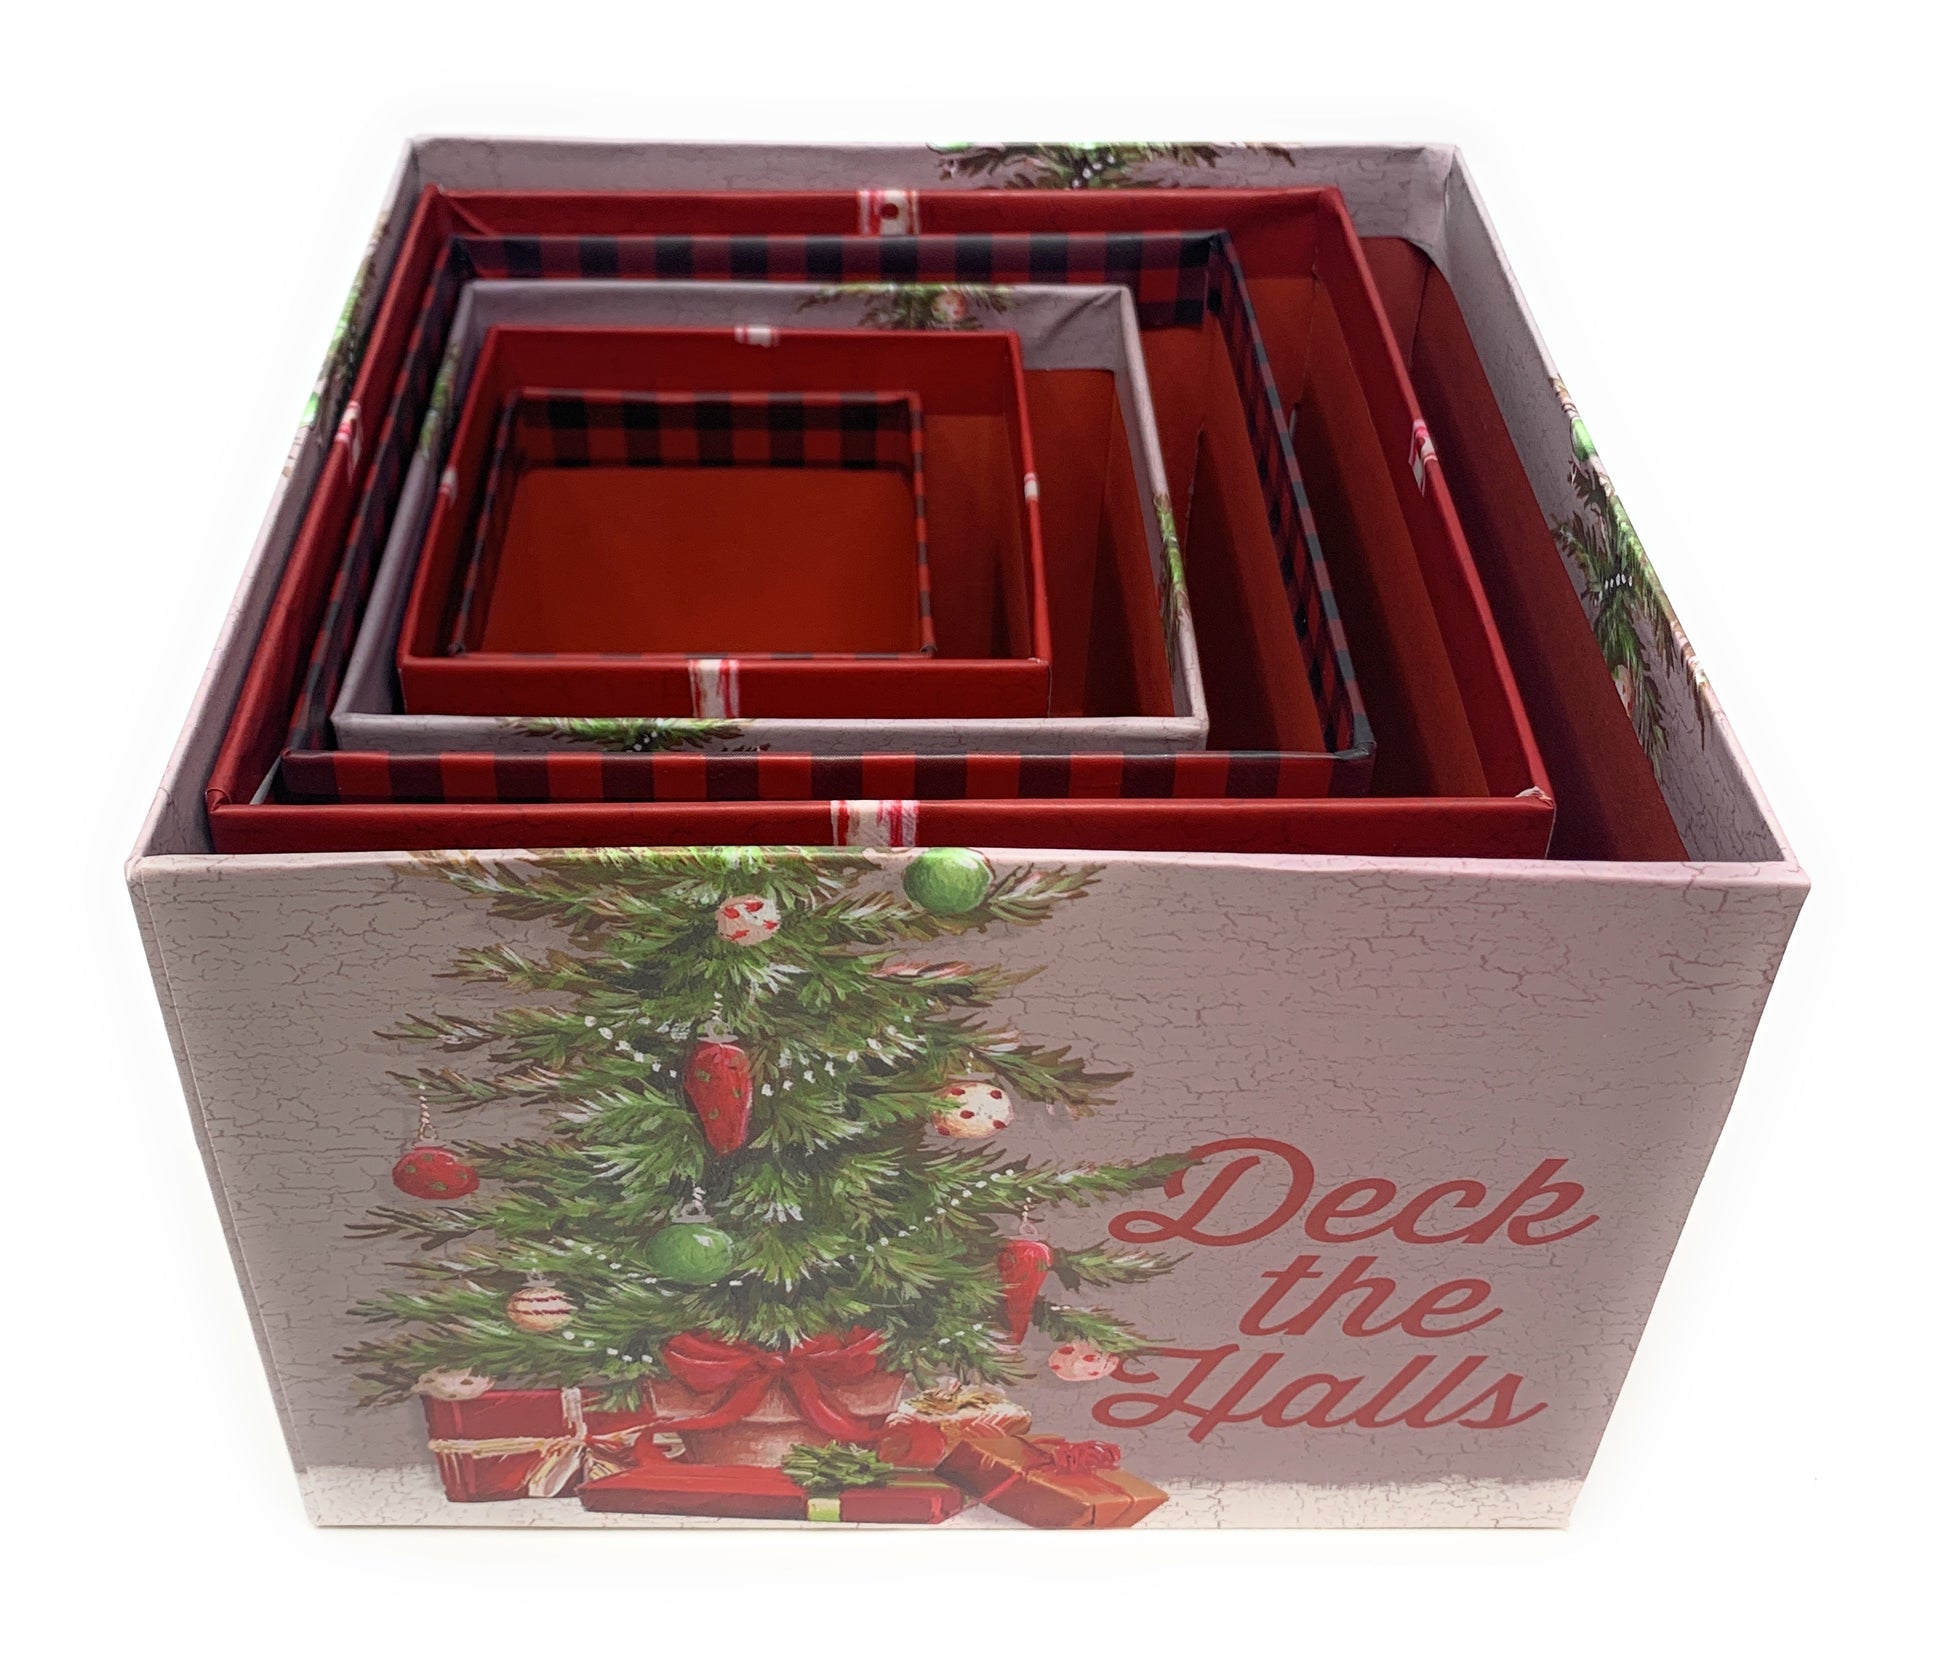 Berkley Jensen Set of 5 Nesting Gift Boxes, Whimsical Designs